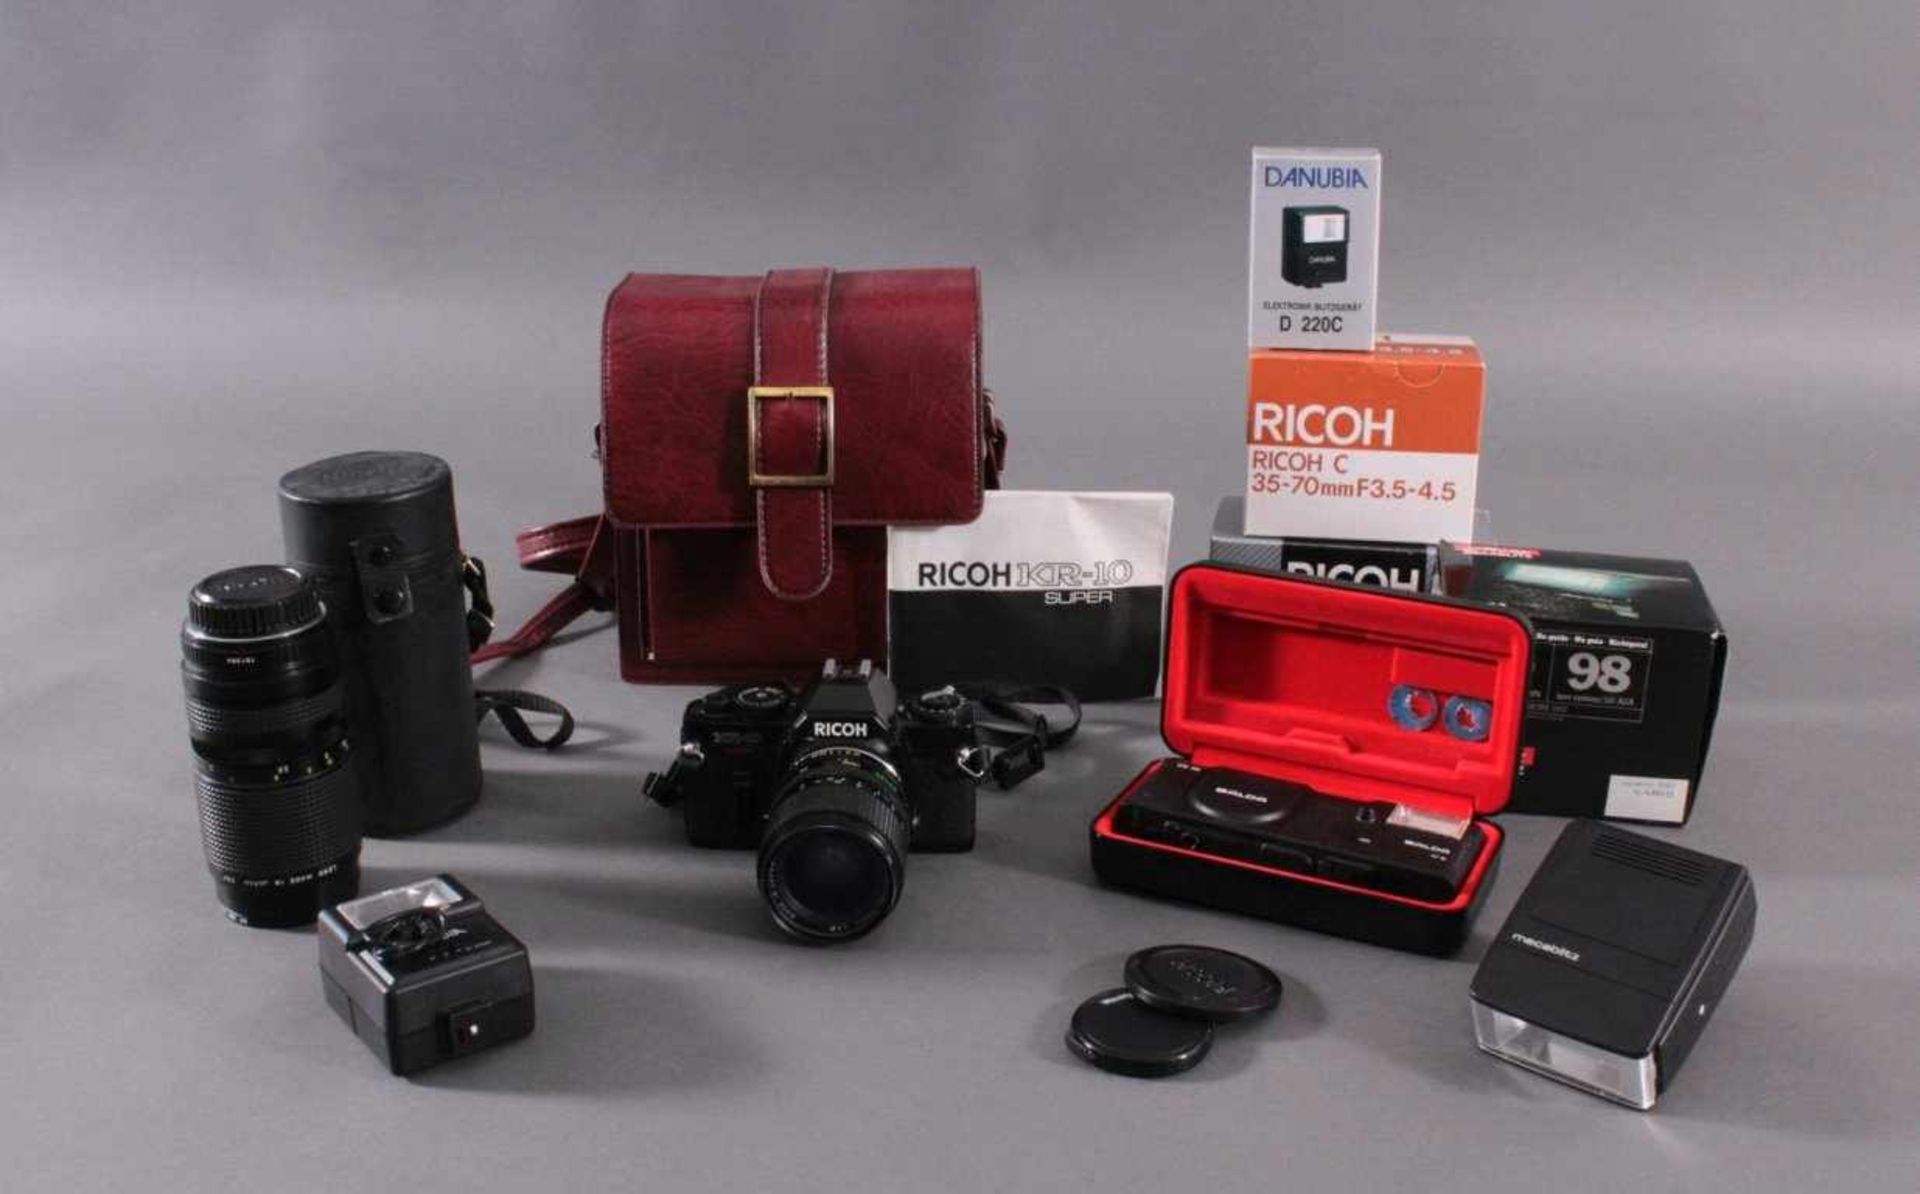 Richo XR-10 Fotoaparat mit Zubehör und Ledertsche1 Objektiv Richo C 1:3.5-4.5, 35-70 mm, Macro D- - Bild 2 aus 2